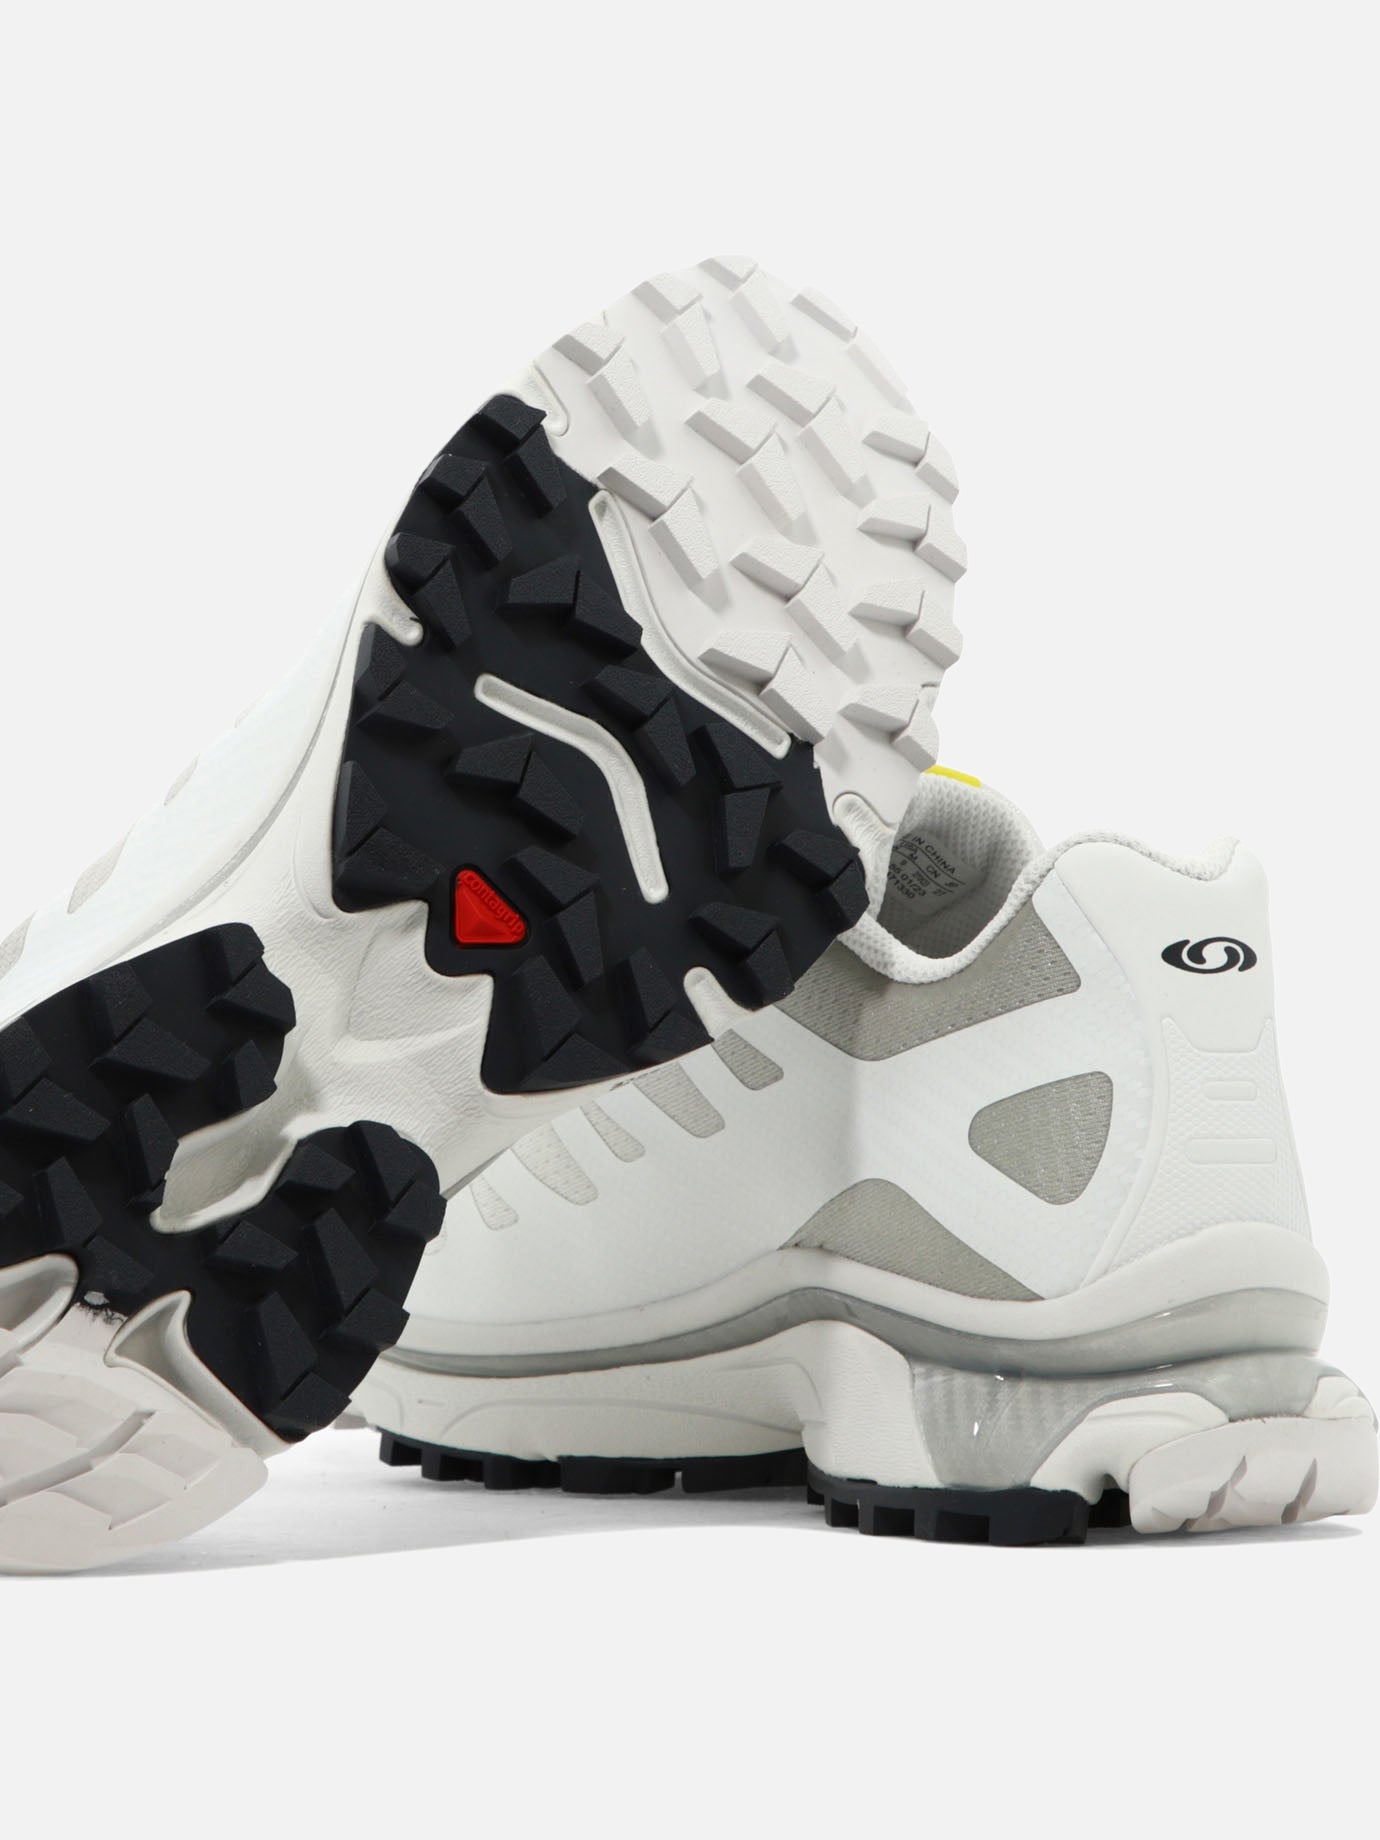 "XT-4 OG" sneakers